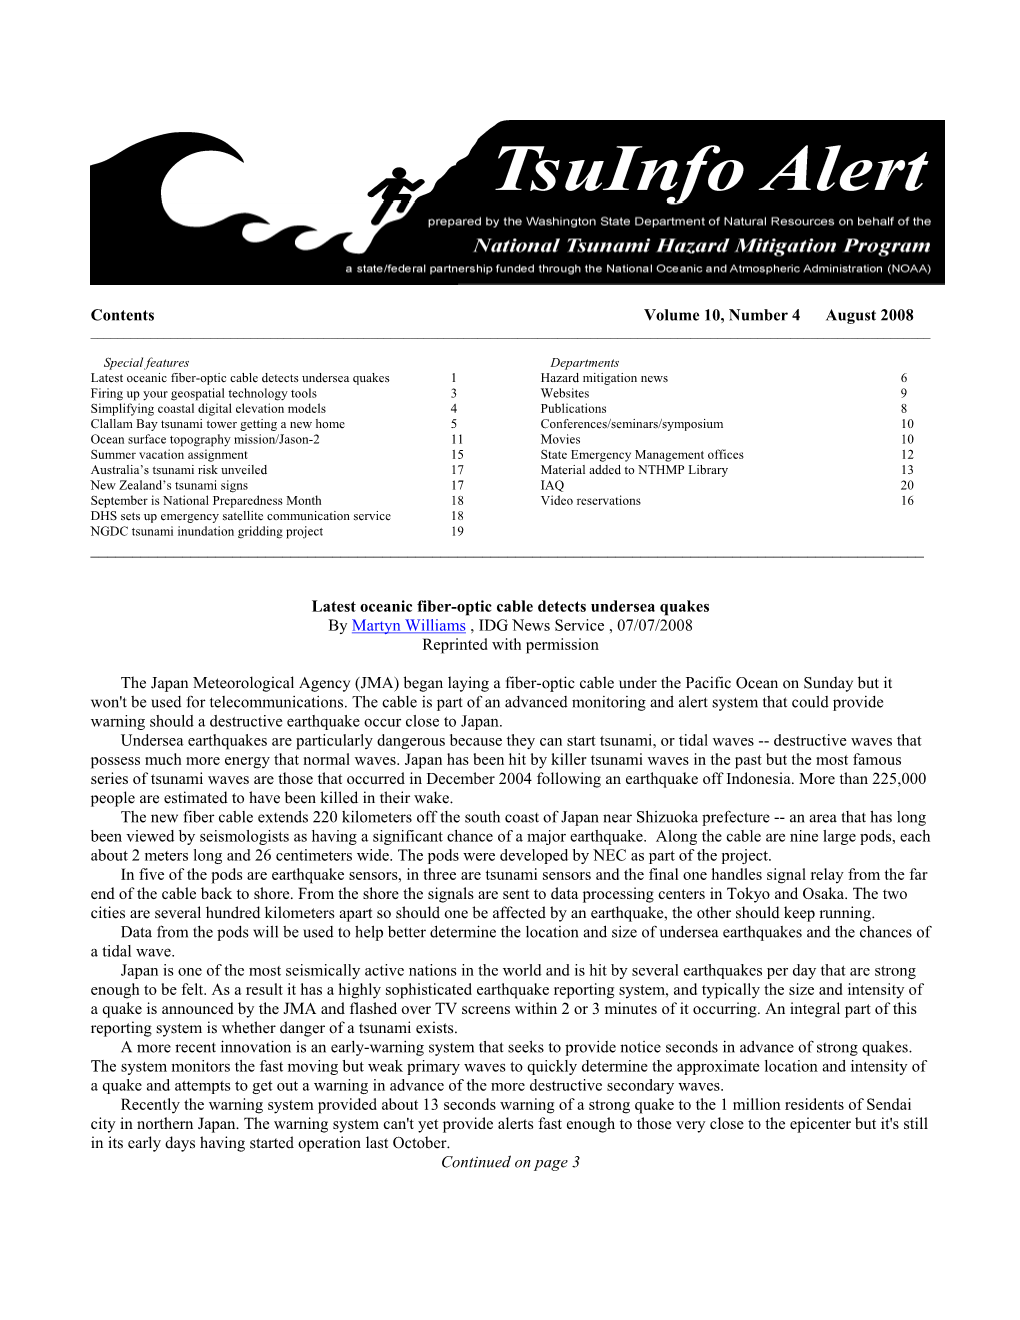 Tsuinfo Alert, August 2008